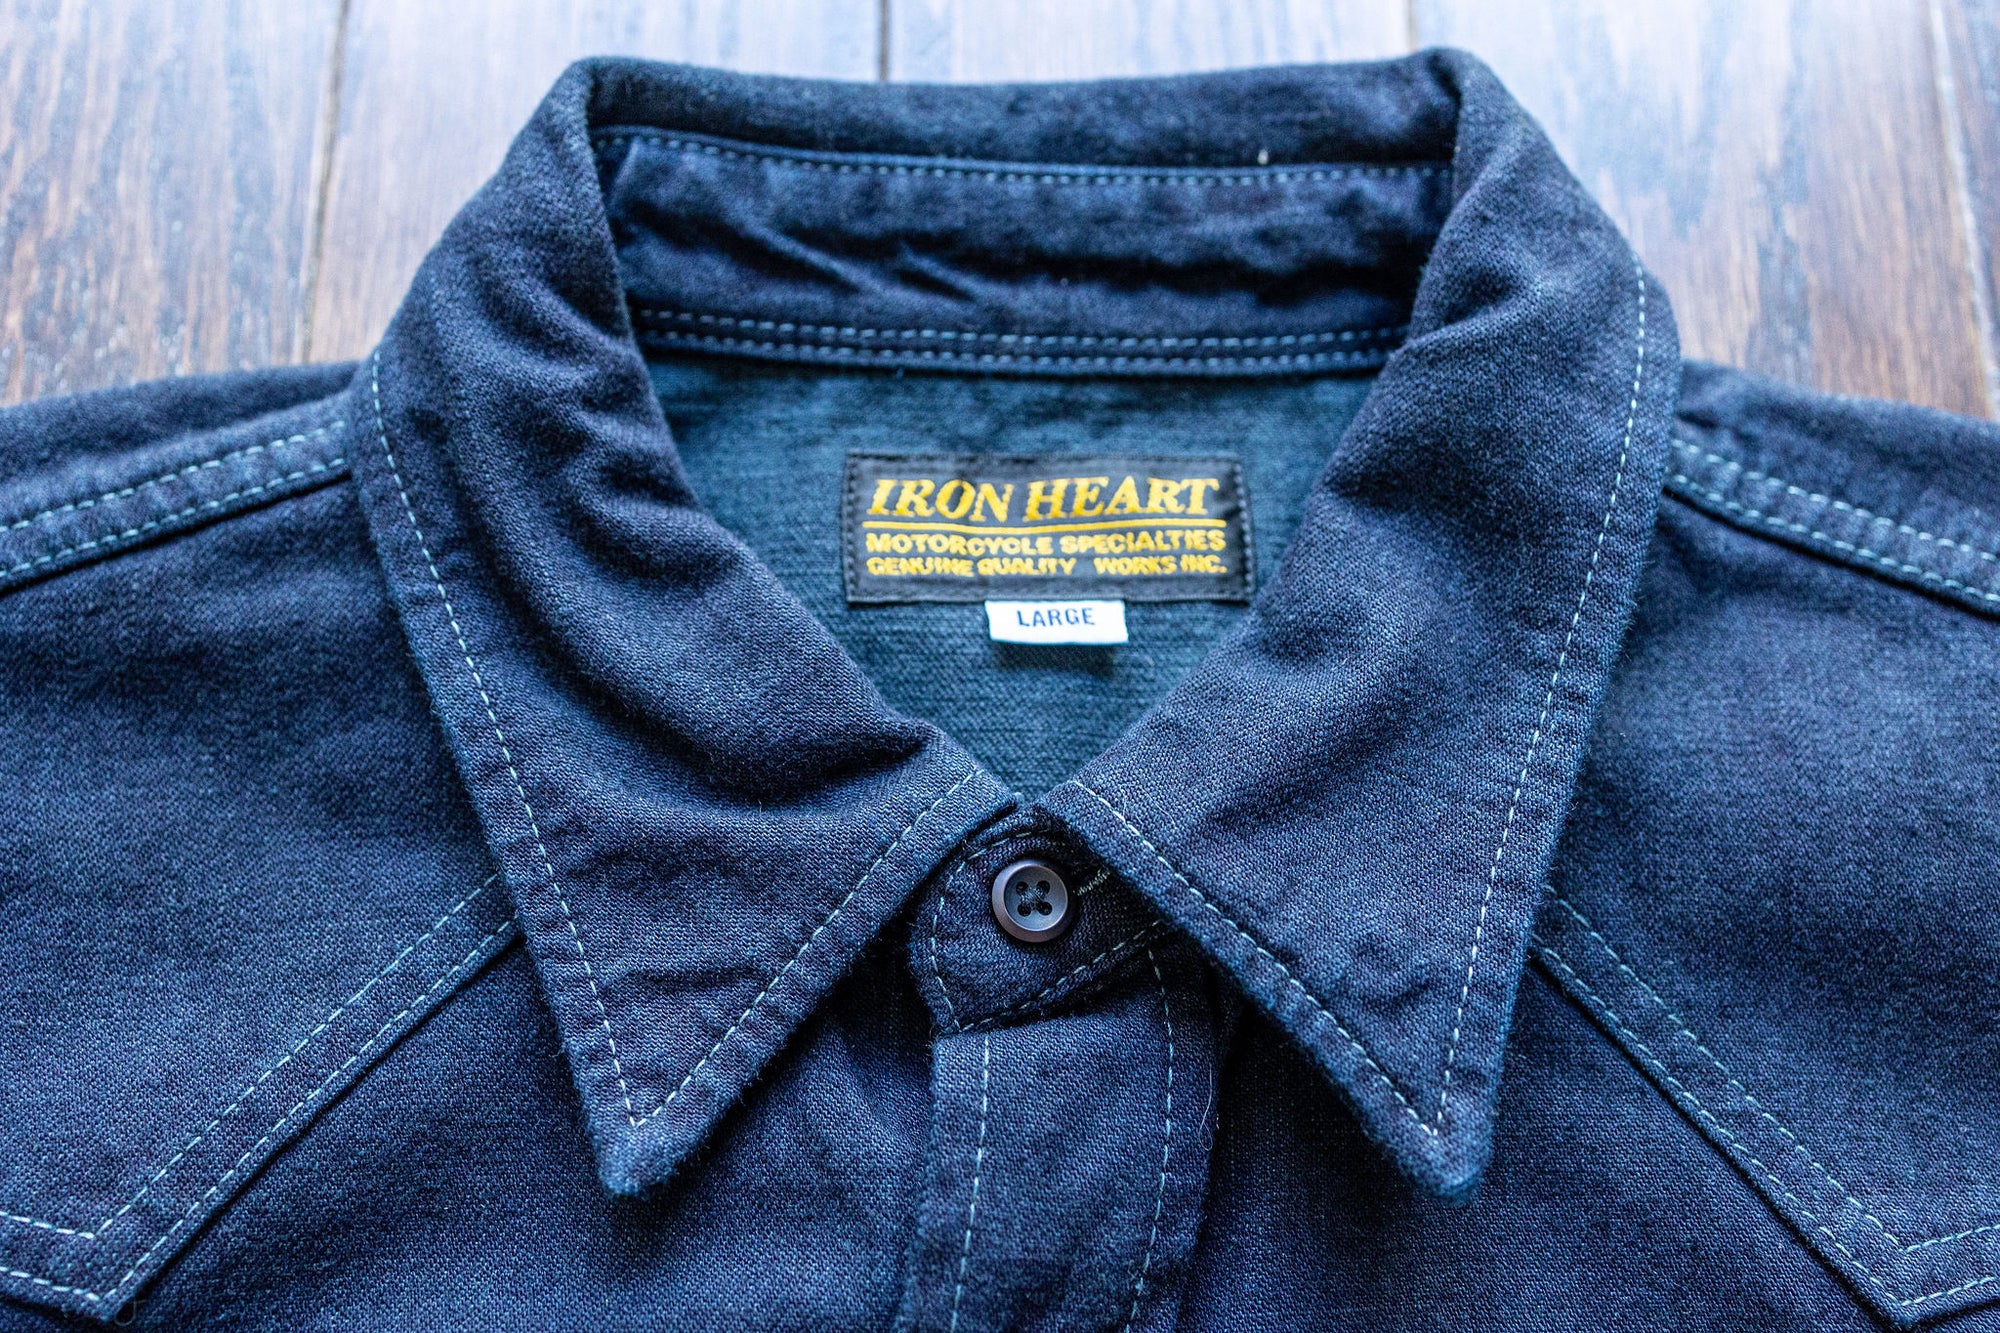 Iron Heart 10oz Western Shirt - IHSH-321-OD - Indigo Overdyed Black